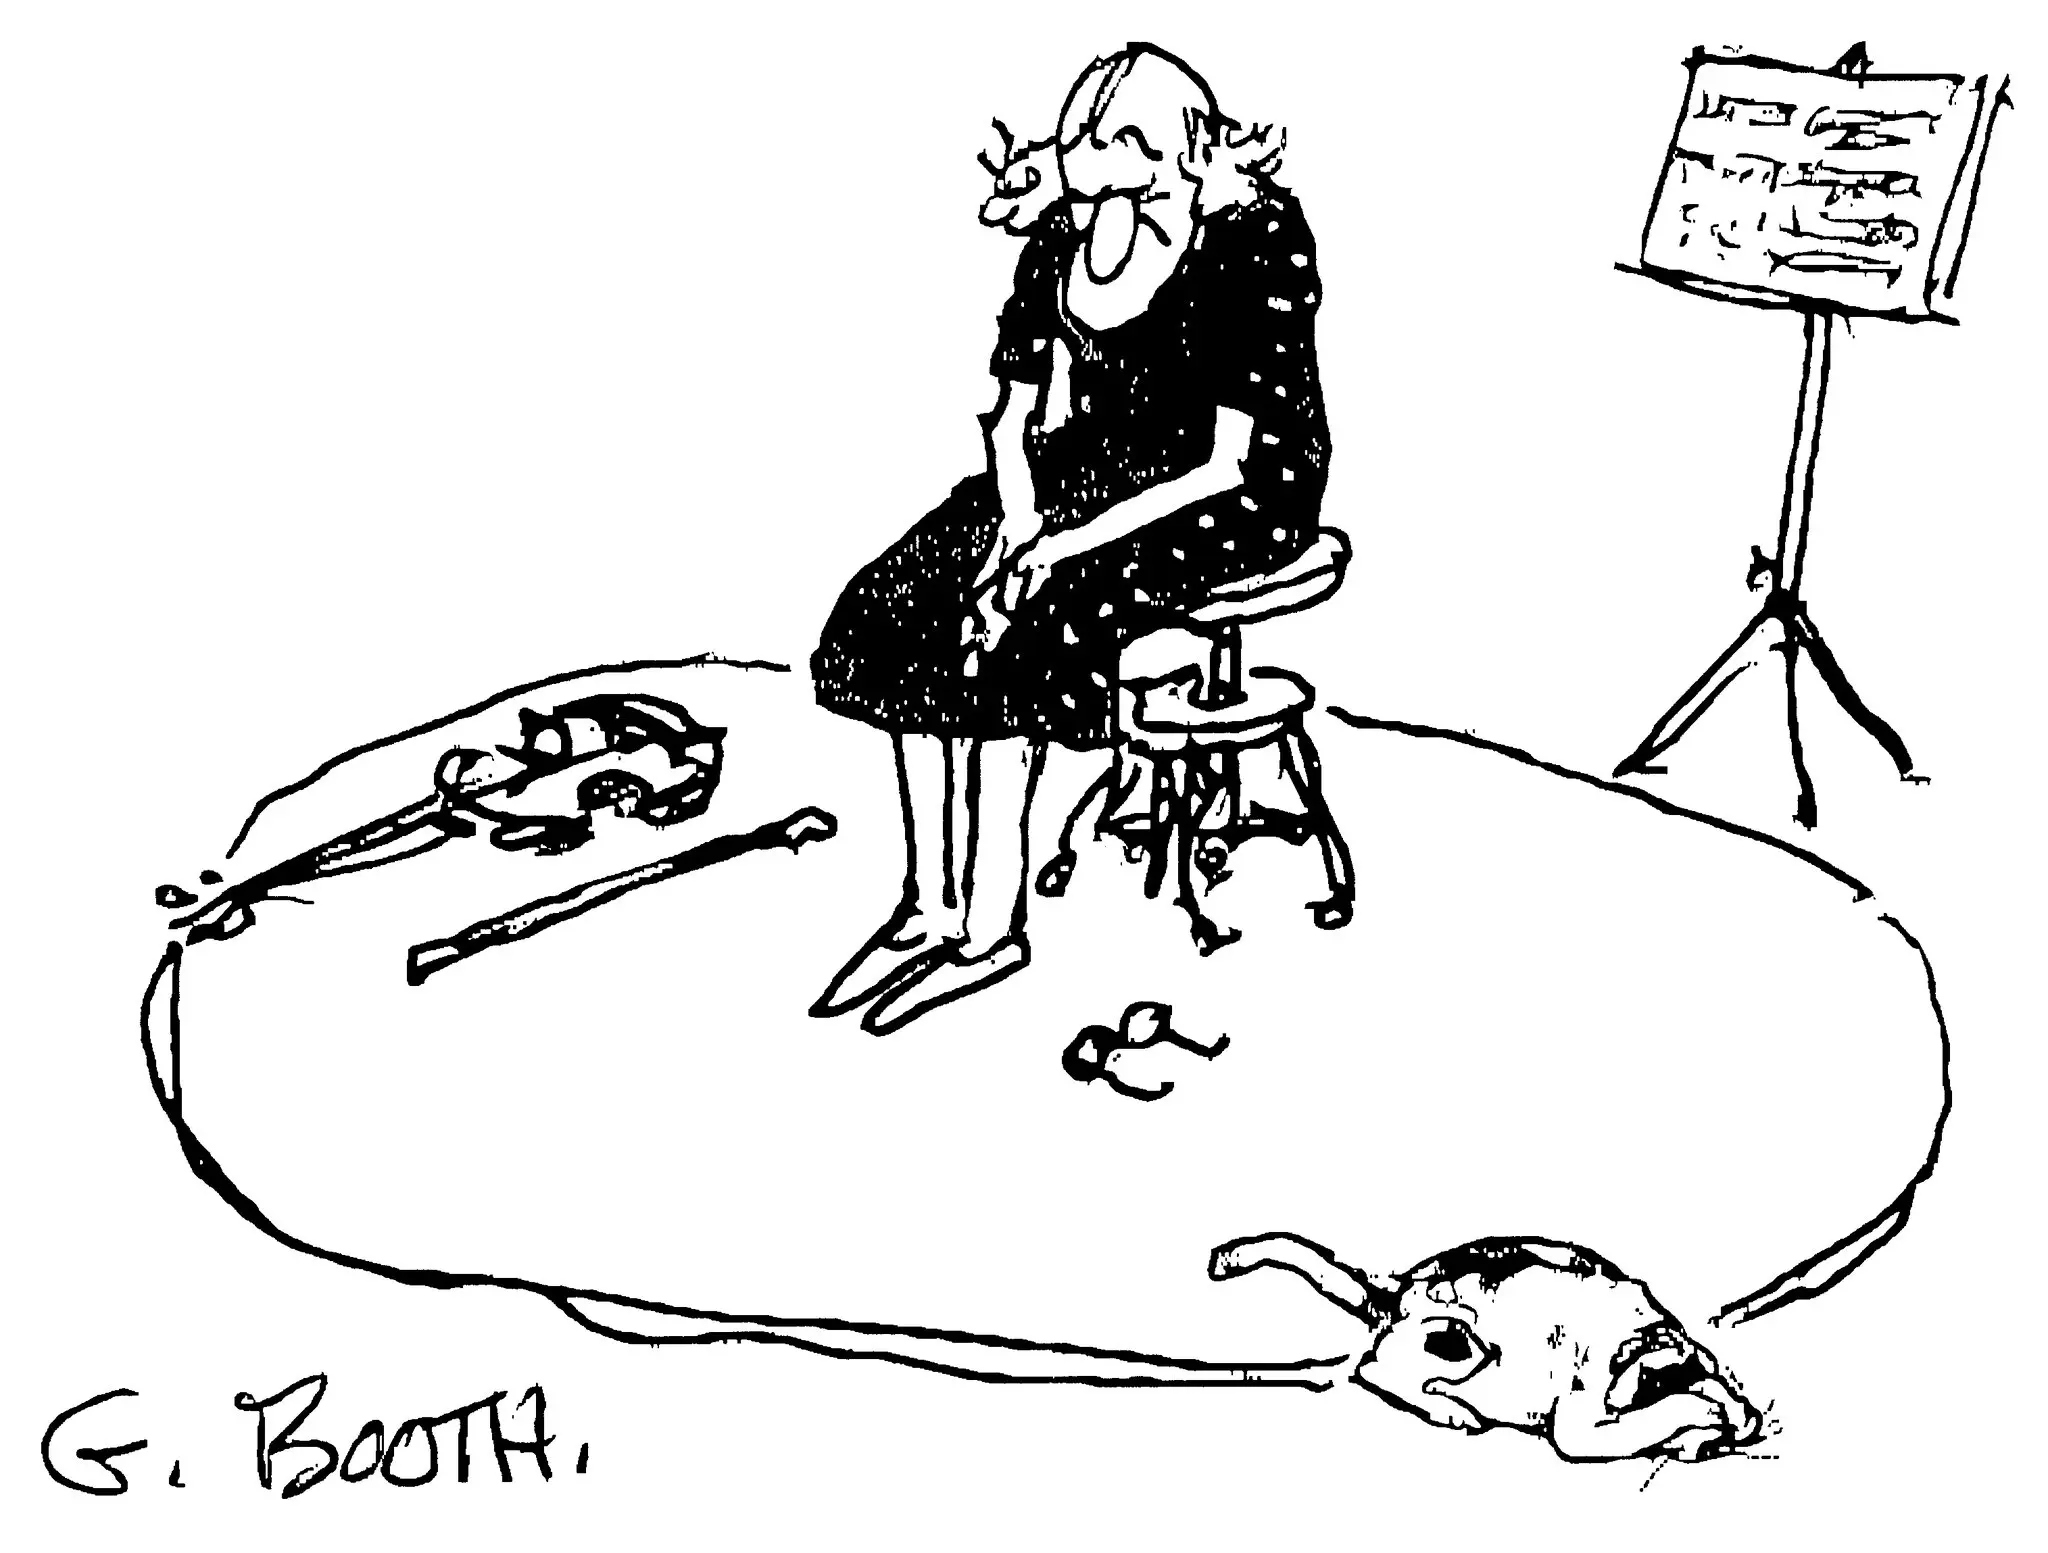 Luego de los ataques del 9/11 la revista The New Yorker publico un numero con tan solo un cartoon, este dibujo de George Booth fue el único que acompañó esa edición.